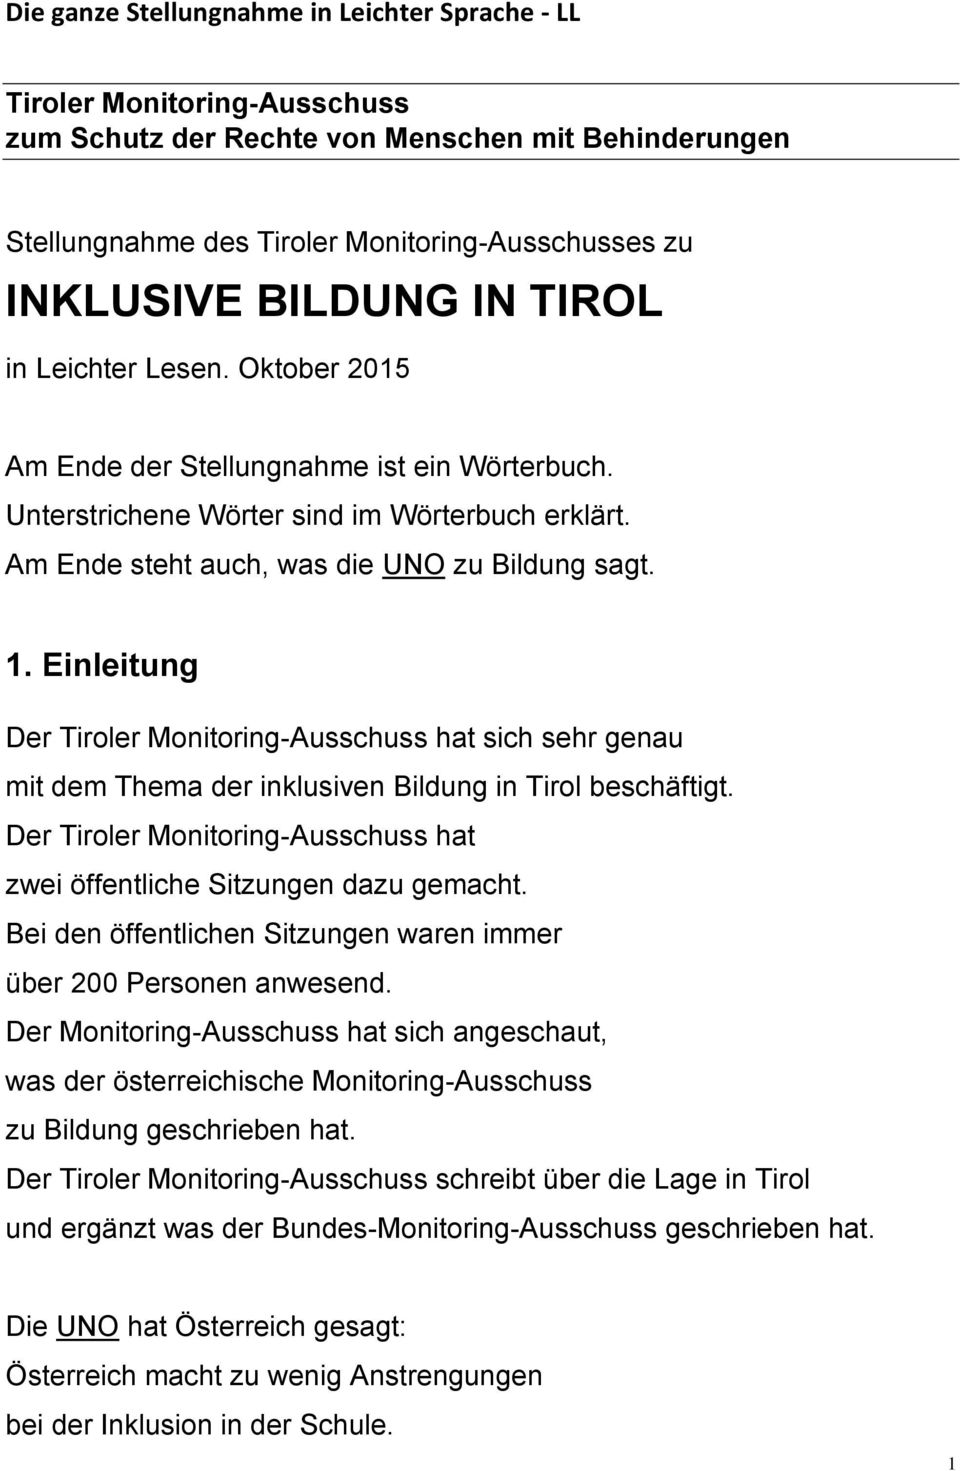 Einleitung Der Tiroler Monitoring-Ausschuss hat sich sehr genau mit dem Thema der inklusiven Bildung in Tirol beschäftigt. Der Tiroler Monitoring-Ausschuss hat zwei öffentliche Sitzungen dazu gemacht.